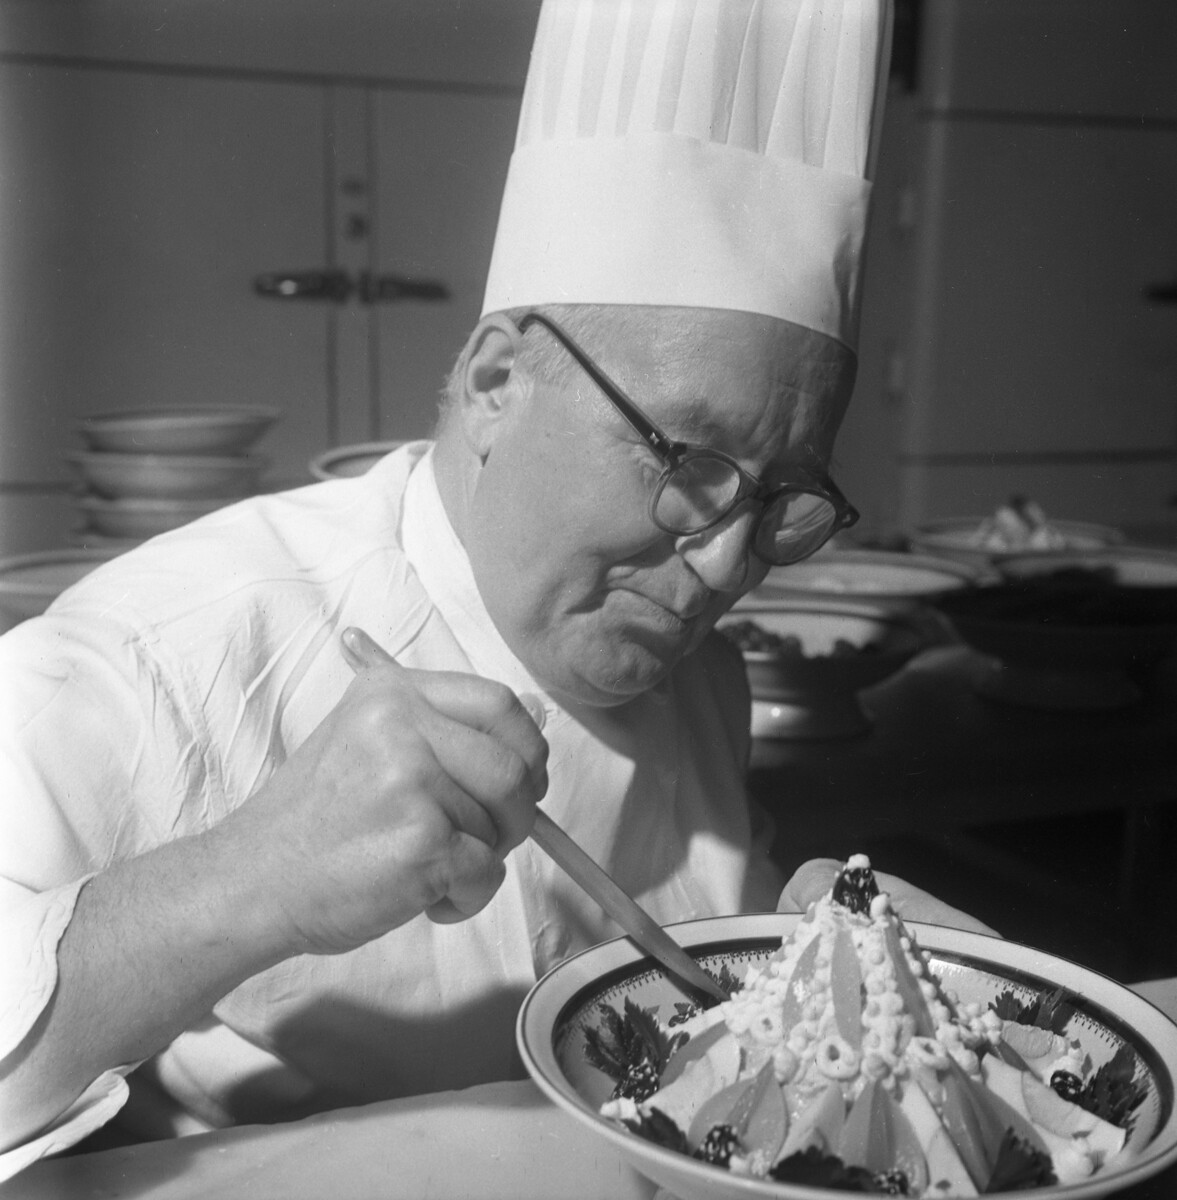 Grigori Ermiline, chef du restaurant de l'hôtel Moskva, met la touche finale à la célèbre salade Stolitchny qu'il a créée.